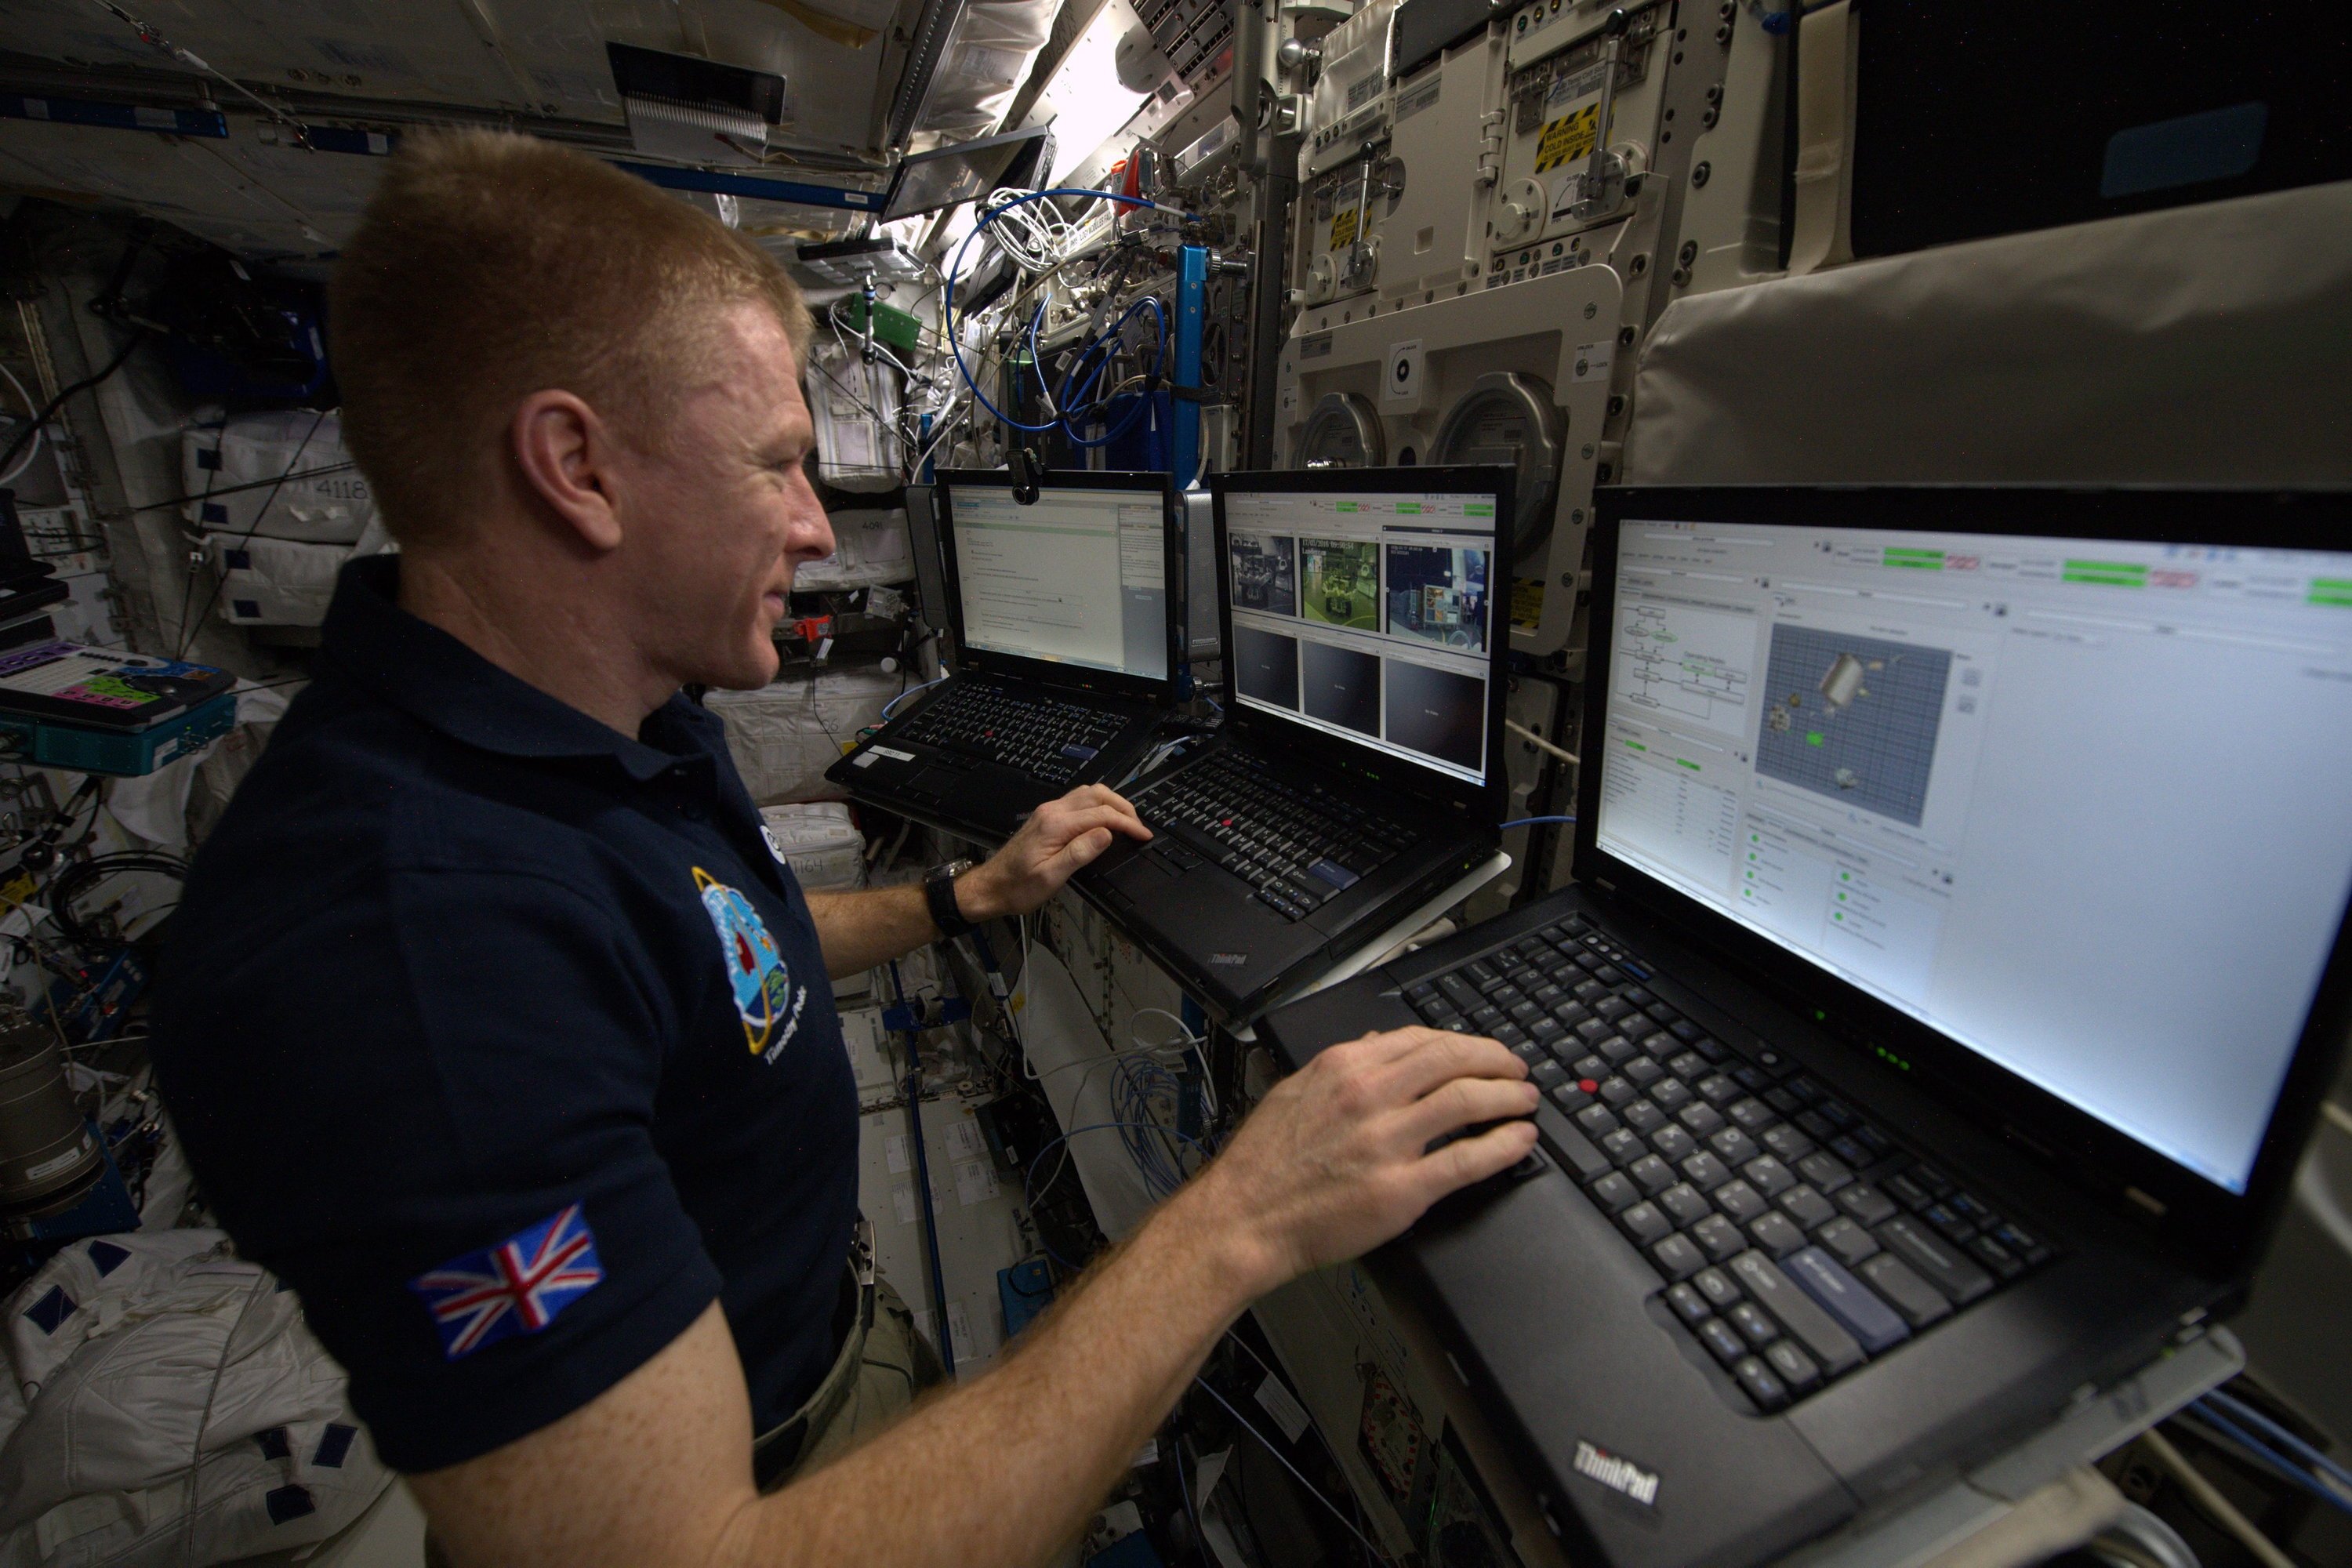 Der britische Astronaut Tim Peake steuerte den Mars-Rover auf der Erde direkt aus der ISS. Mit dieser Technik sollen Astronauten auf einer Mars-Mission erst einmal die Mars-Oberfläche untersuchen können, bevor sie selbst landen.